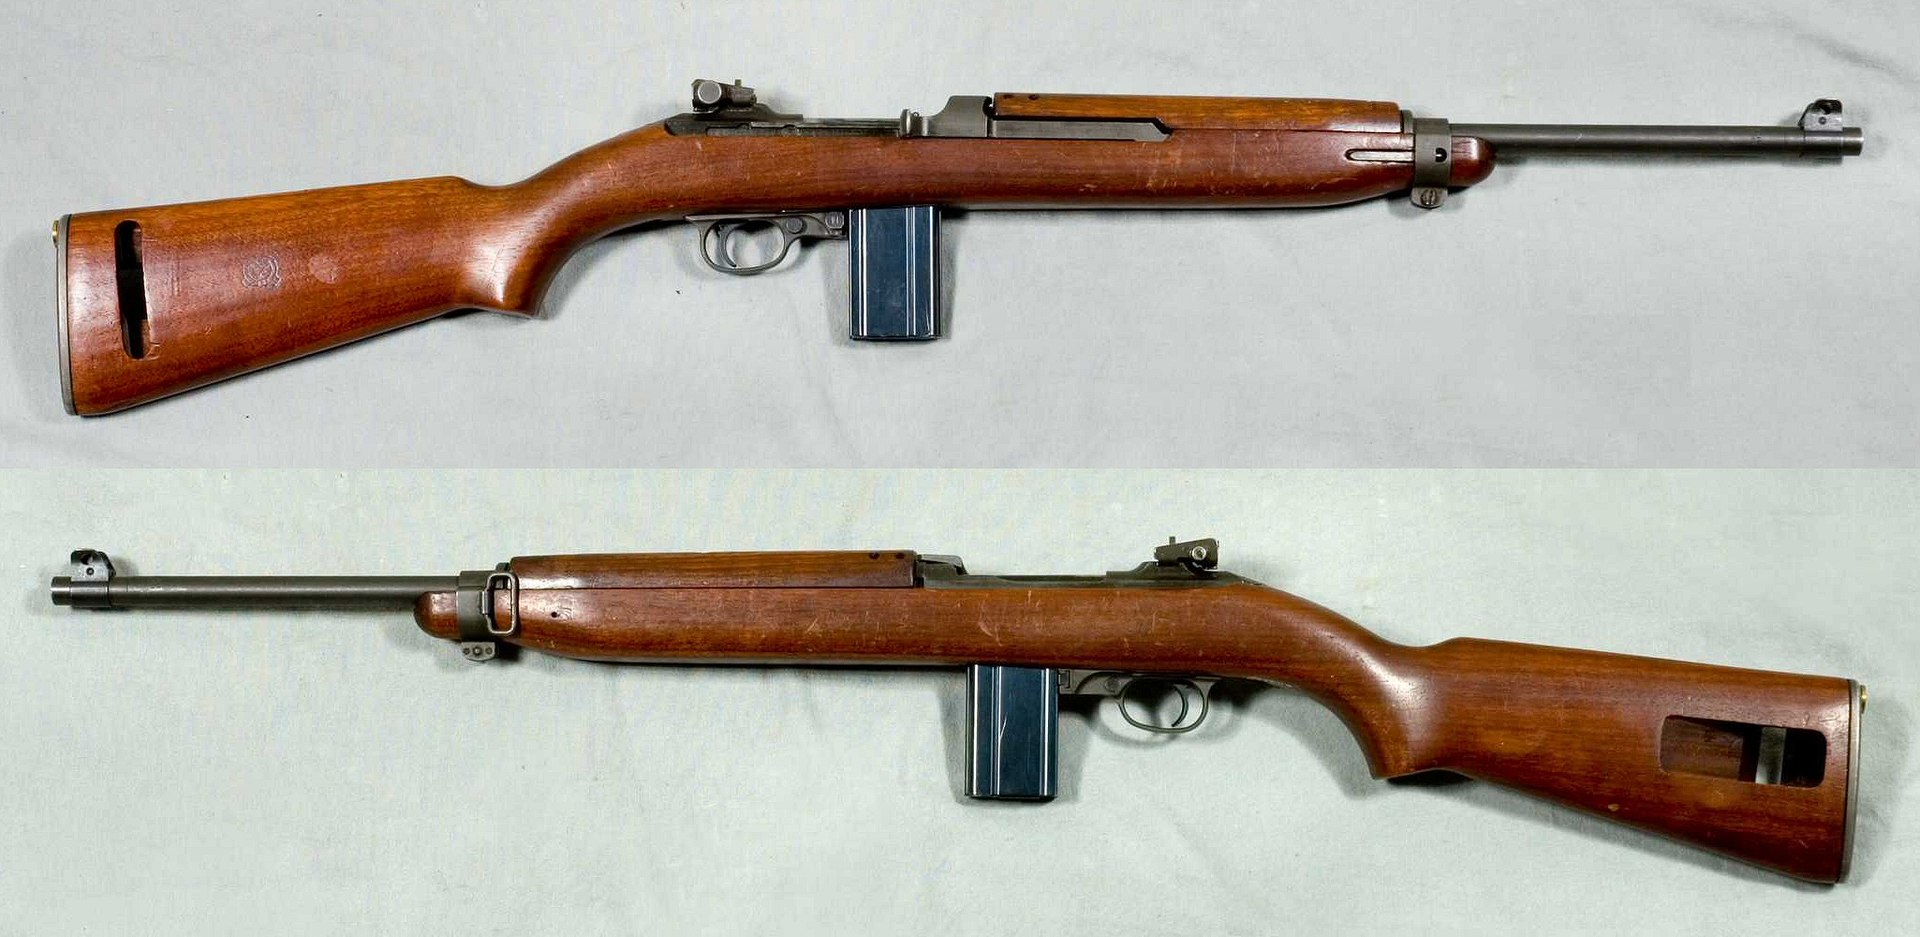 1920px-M1_Carbine_Mk_I_-_USA_-_Arm%C3%A9museum.jpg